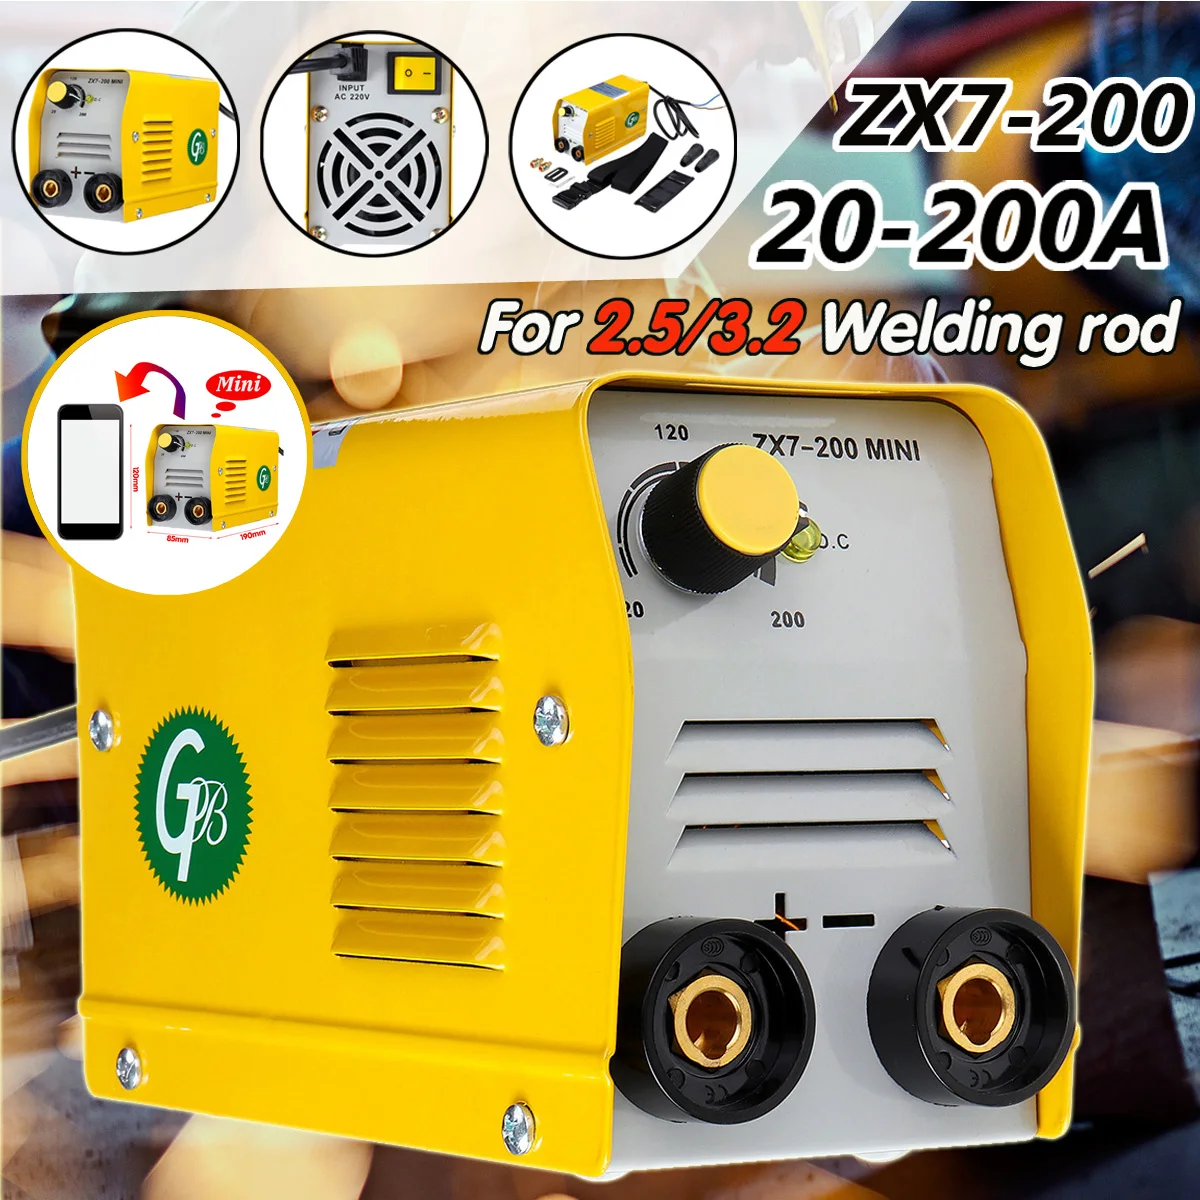 

ZX7-200 220V Мини 20A-200A Электрический сварочный аппарат IGBT DC инвертор дуговой сварки-сварочные аппараты 190 мм x 120 мм x 85 мм